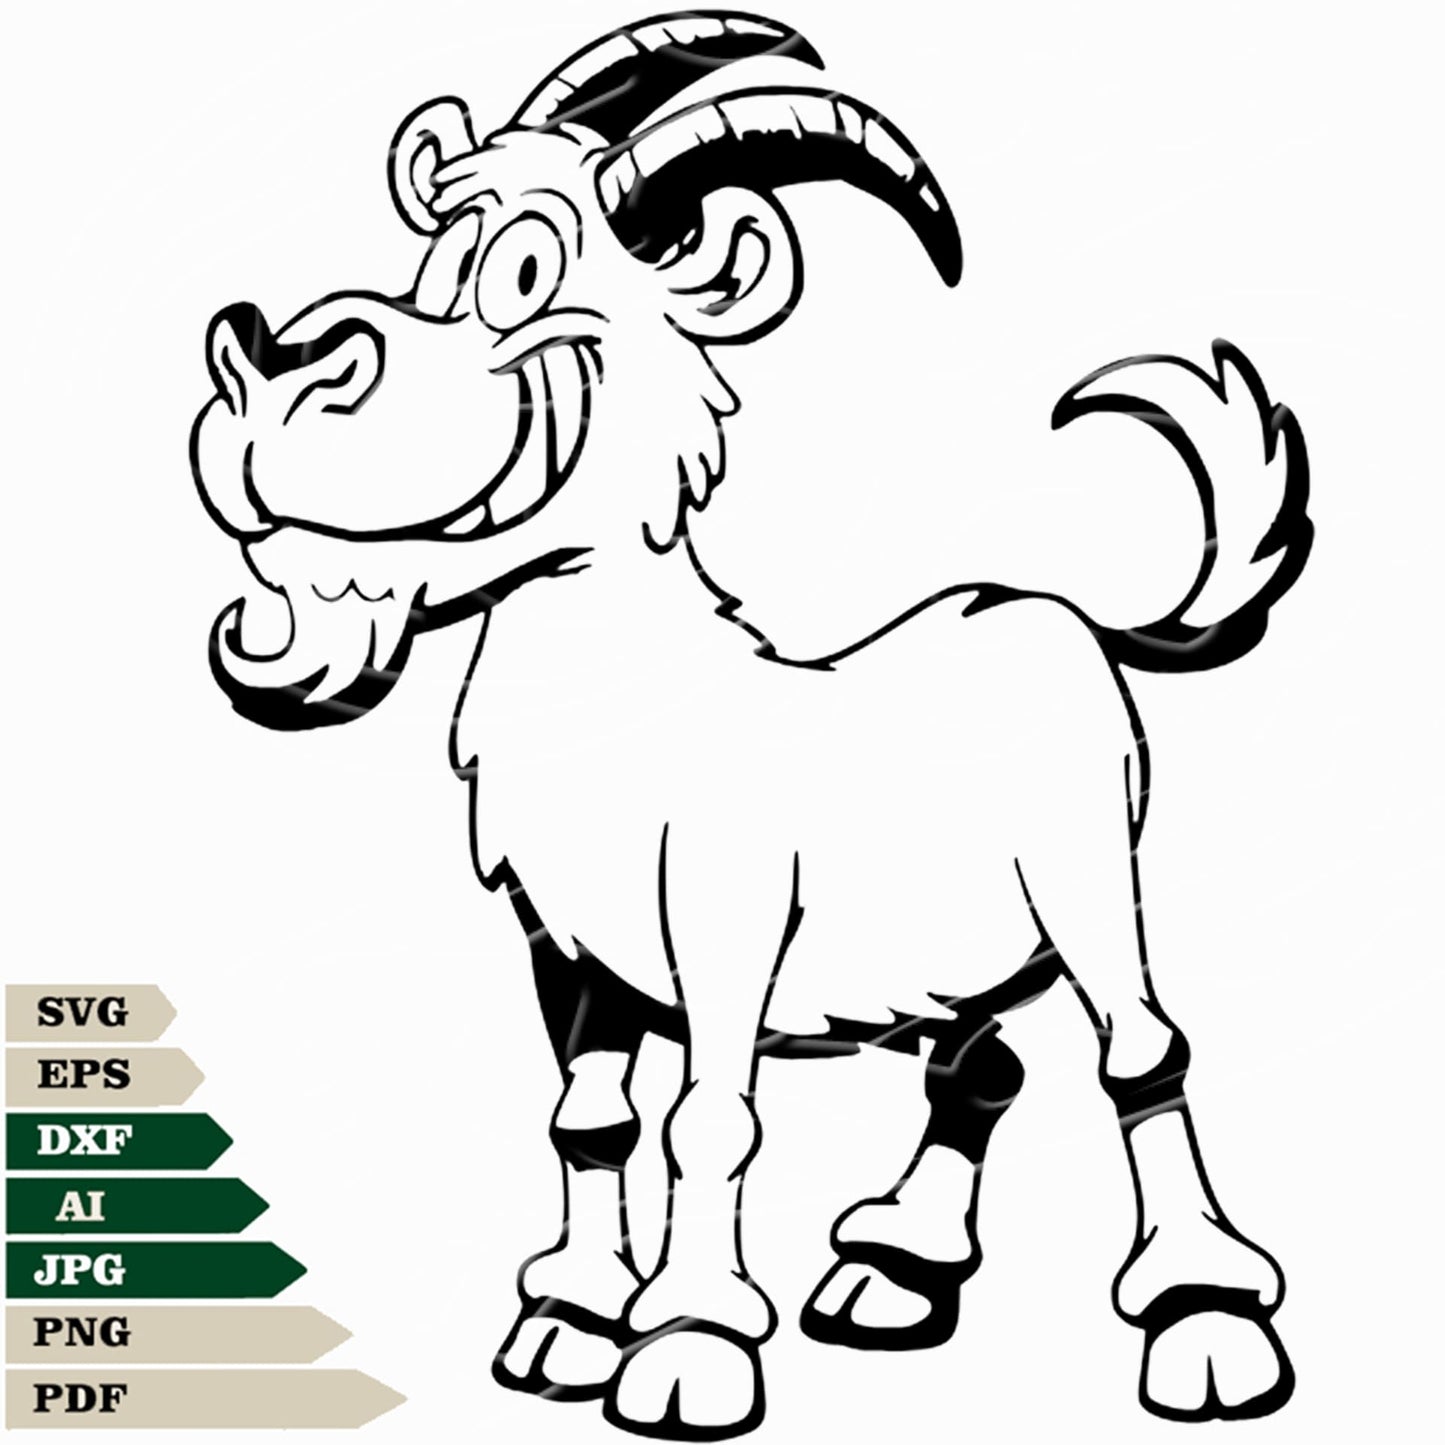 Goat Svg File, Funny Goat Svg Design, Goat Png, Animals Svg File, Goat Vector Graphics, Funny Goat Svg For Tattoo, Goat Svg For Cricut